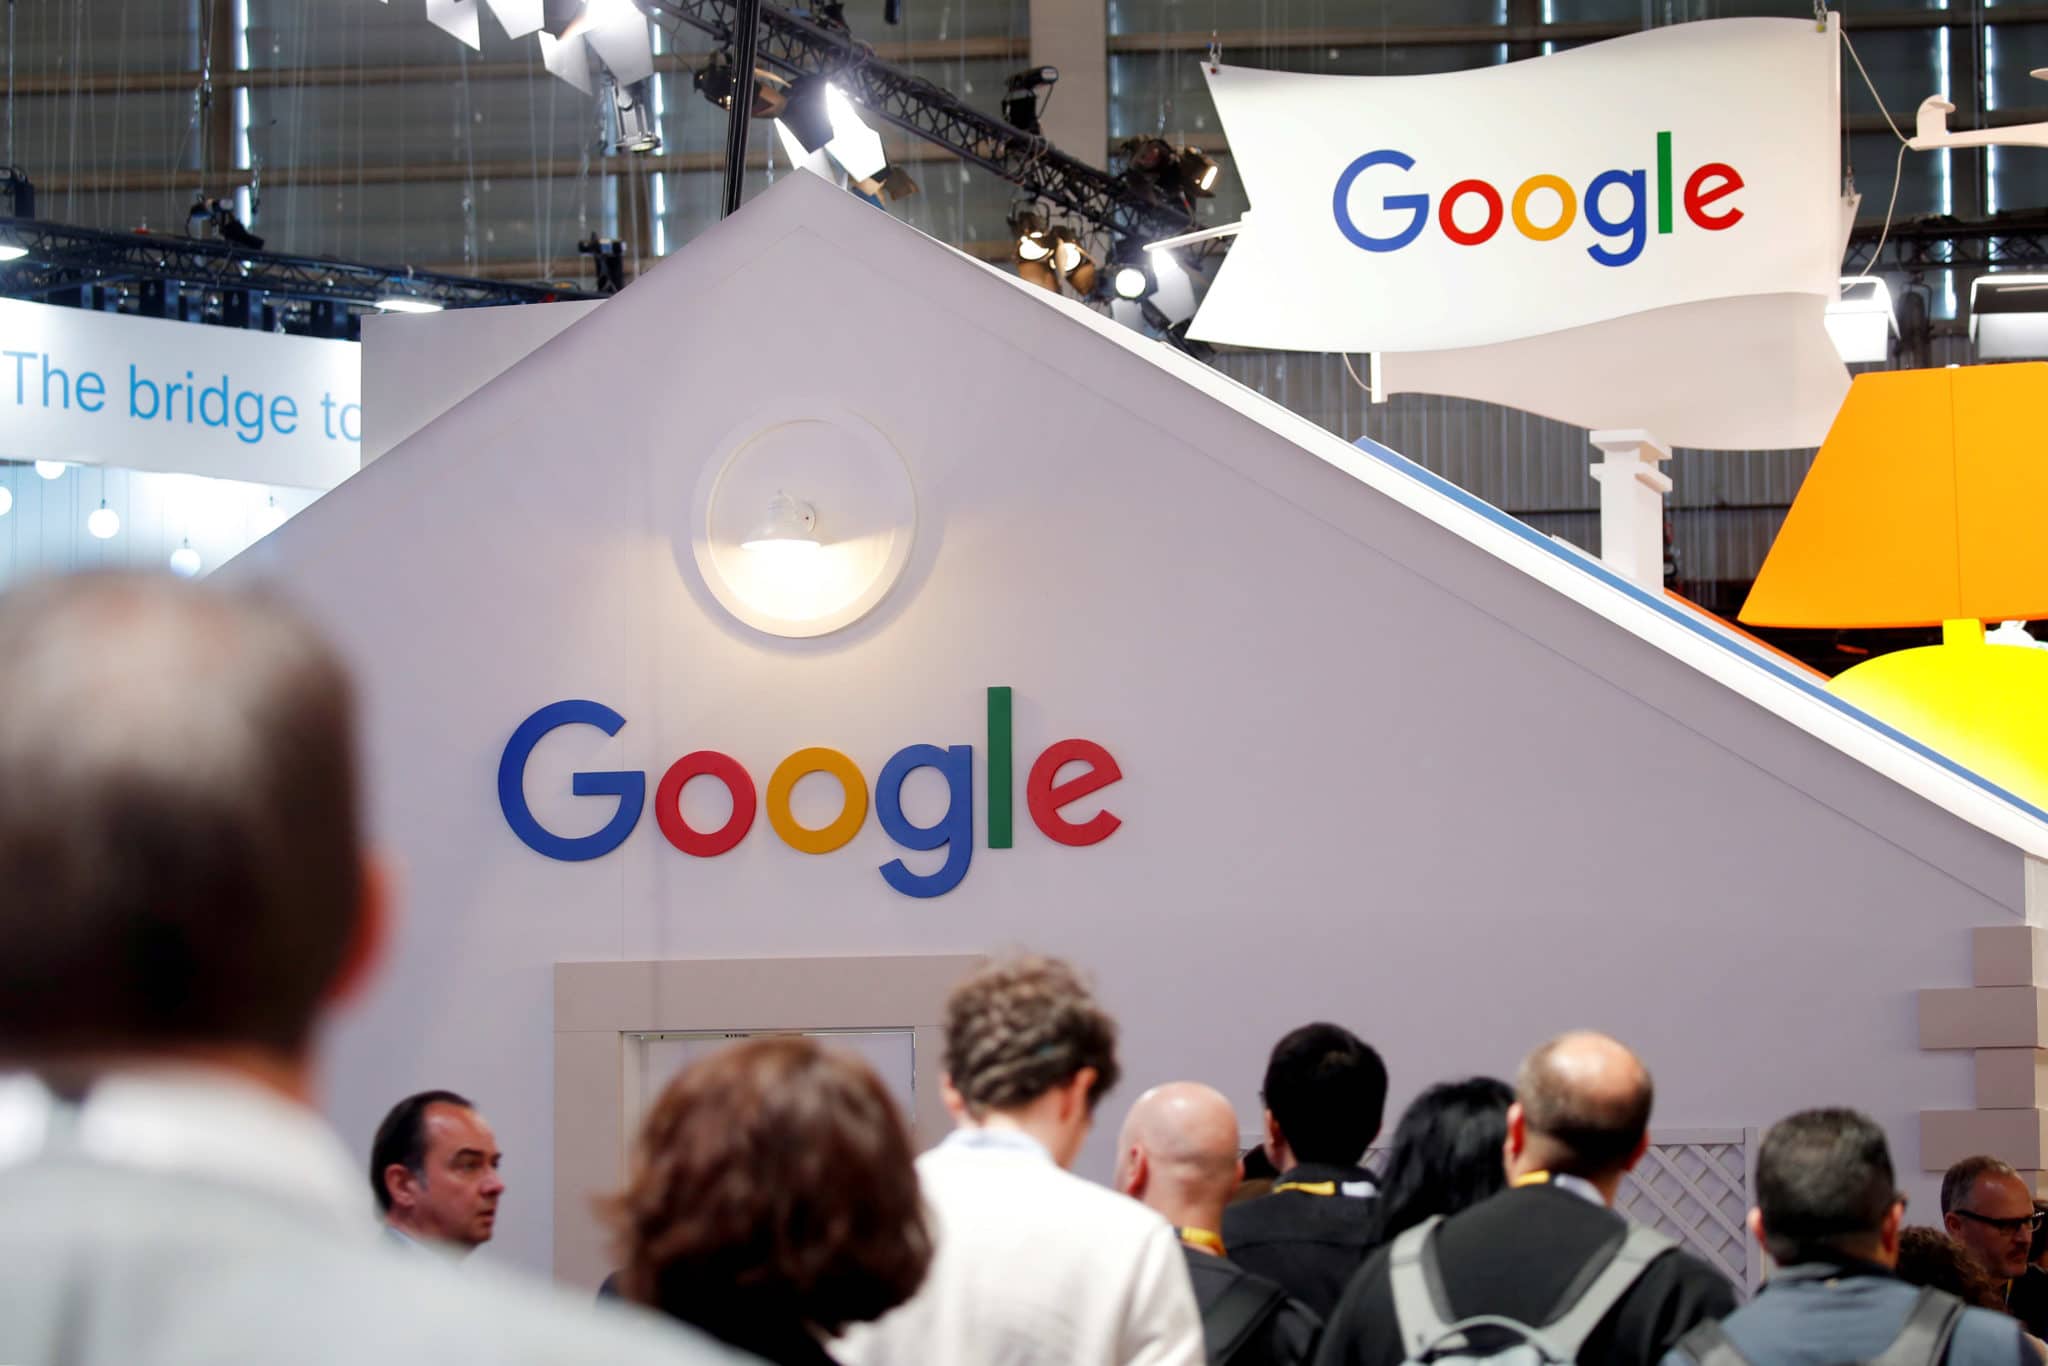 جوجل تواجه تهديدًا خطيرًا بشأن هيمنتها على الإعلانات   البوابة العربية للأخبار التقنية